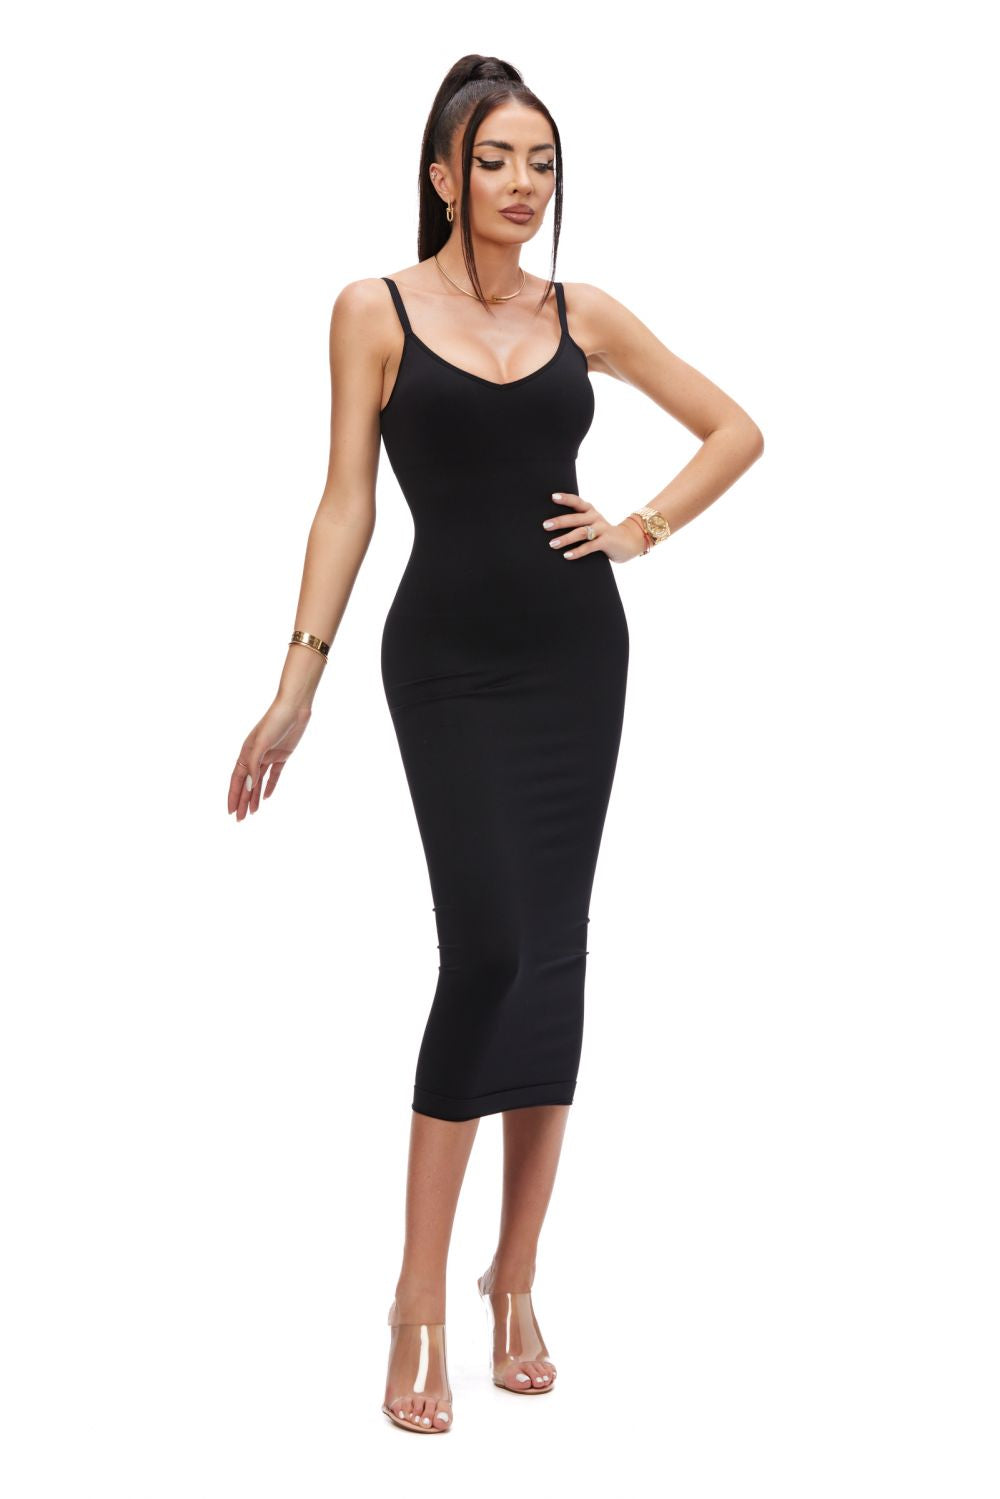 Lybras Bogas casual black modeling dress for women